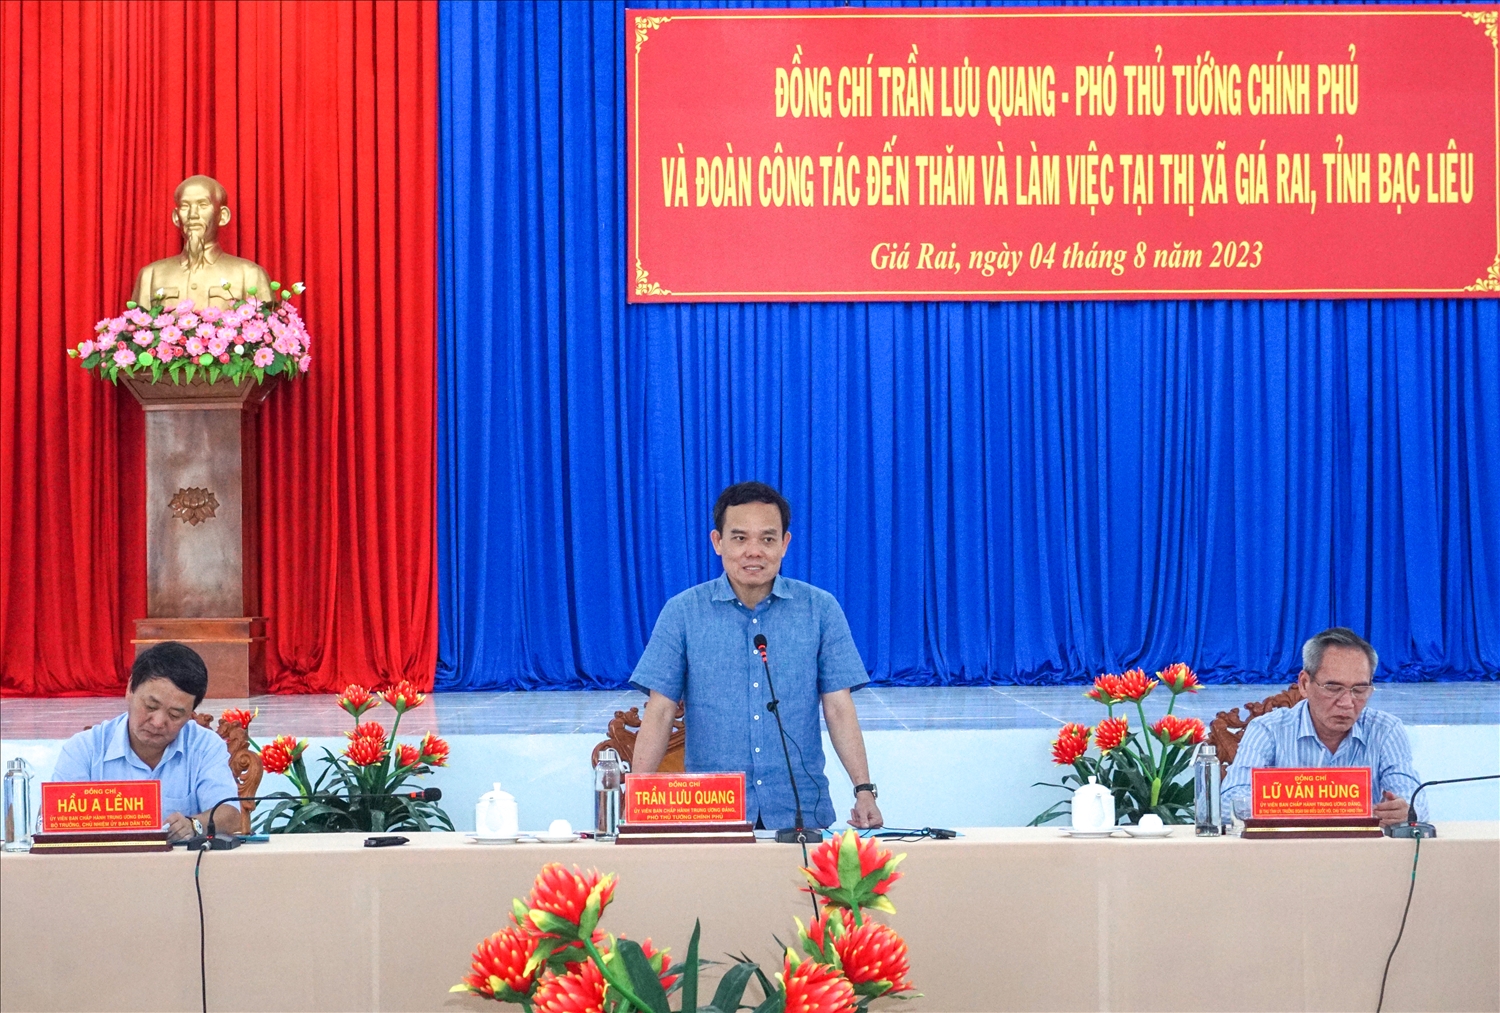 Phó Thủ tướng Trần Lưu Quang phát biểu tại buổi làm việc với Thị xã Giá Rai 